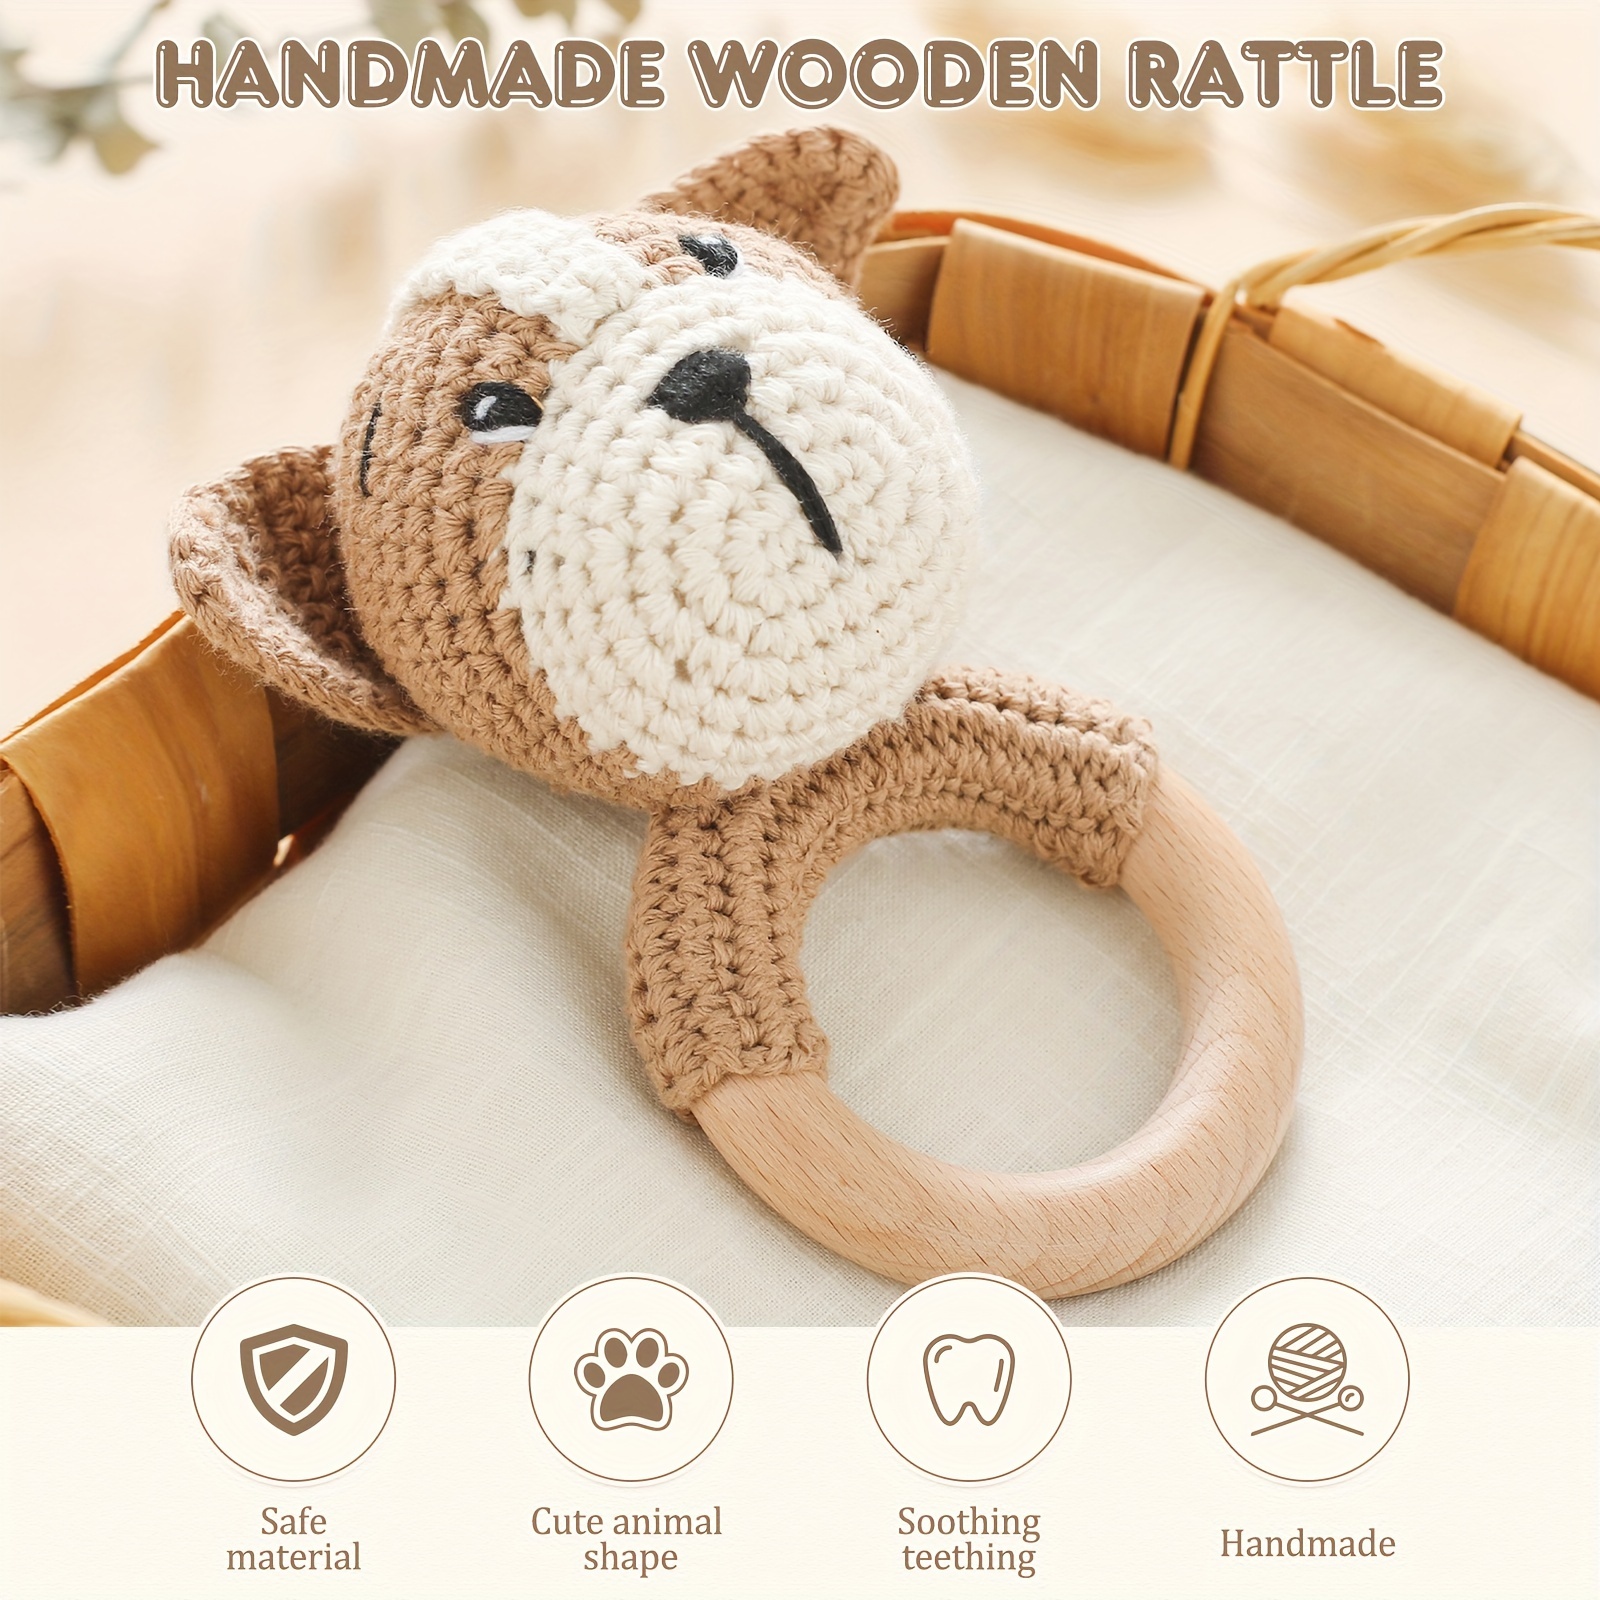 Handmade Wooden Rattle